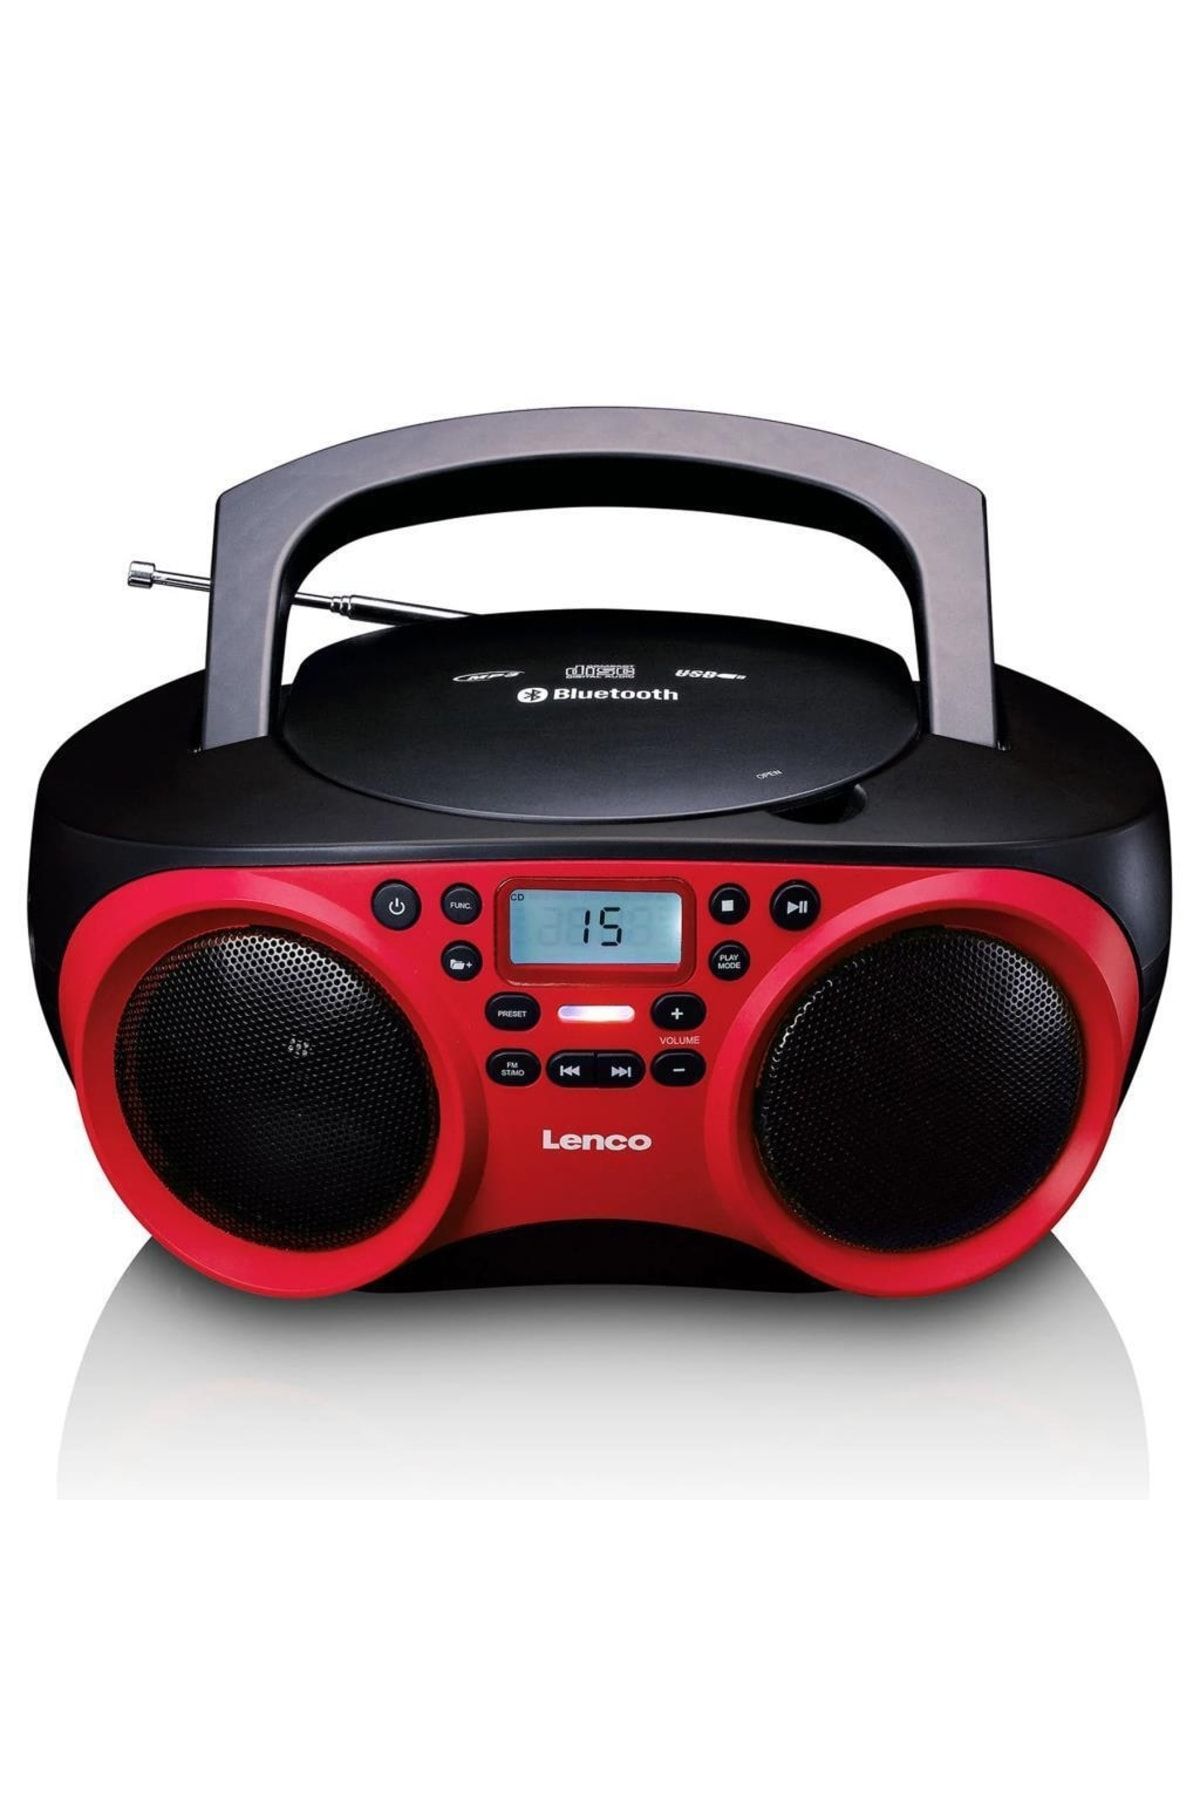 Lenco Scd-501 Kırmızı Taşınabilir Müzik Seti Fm Radyo Bluetooth Özellikli Cd-usb Oynatıcı - Kırmızı